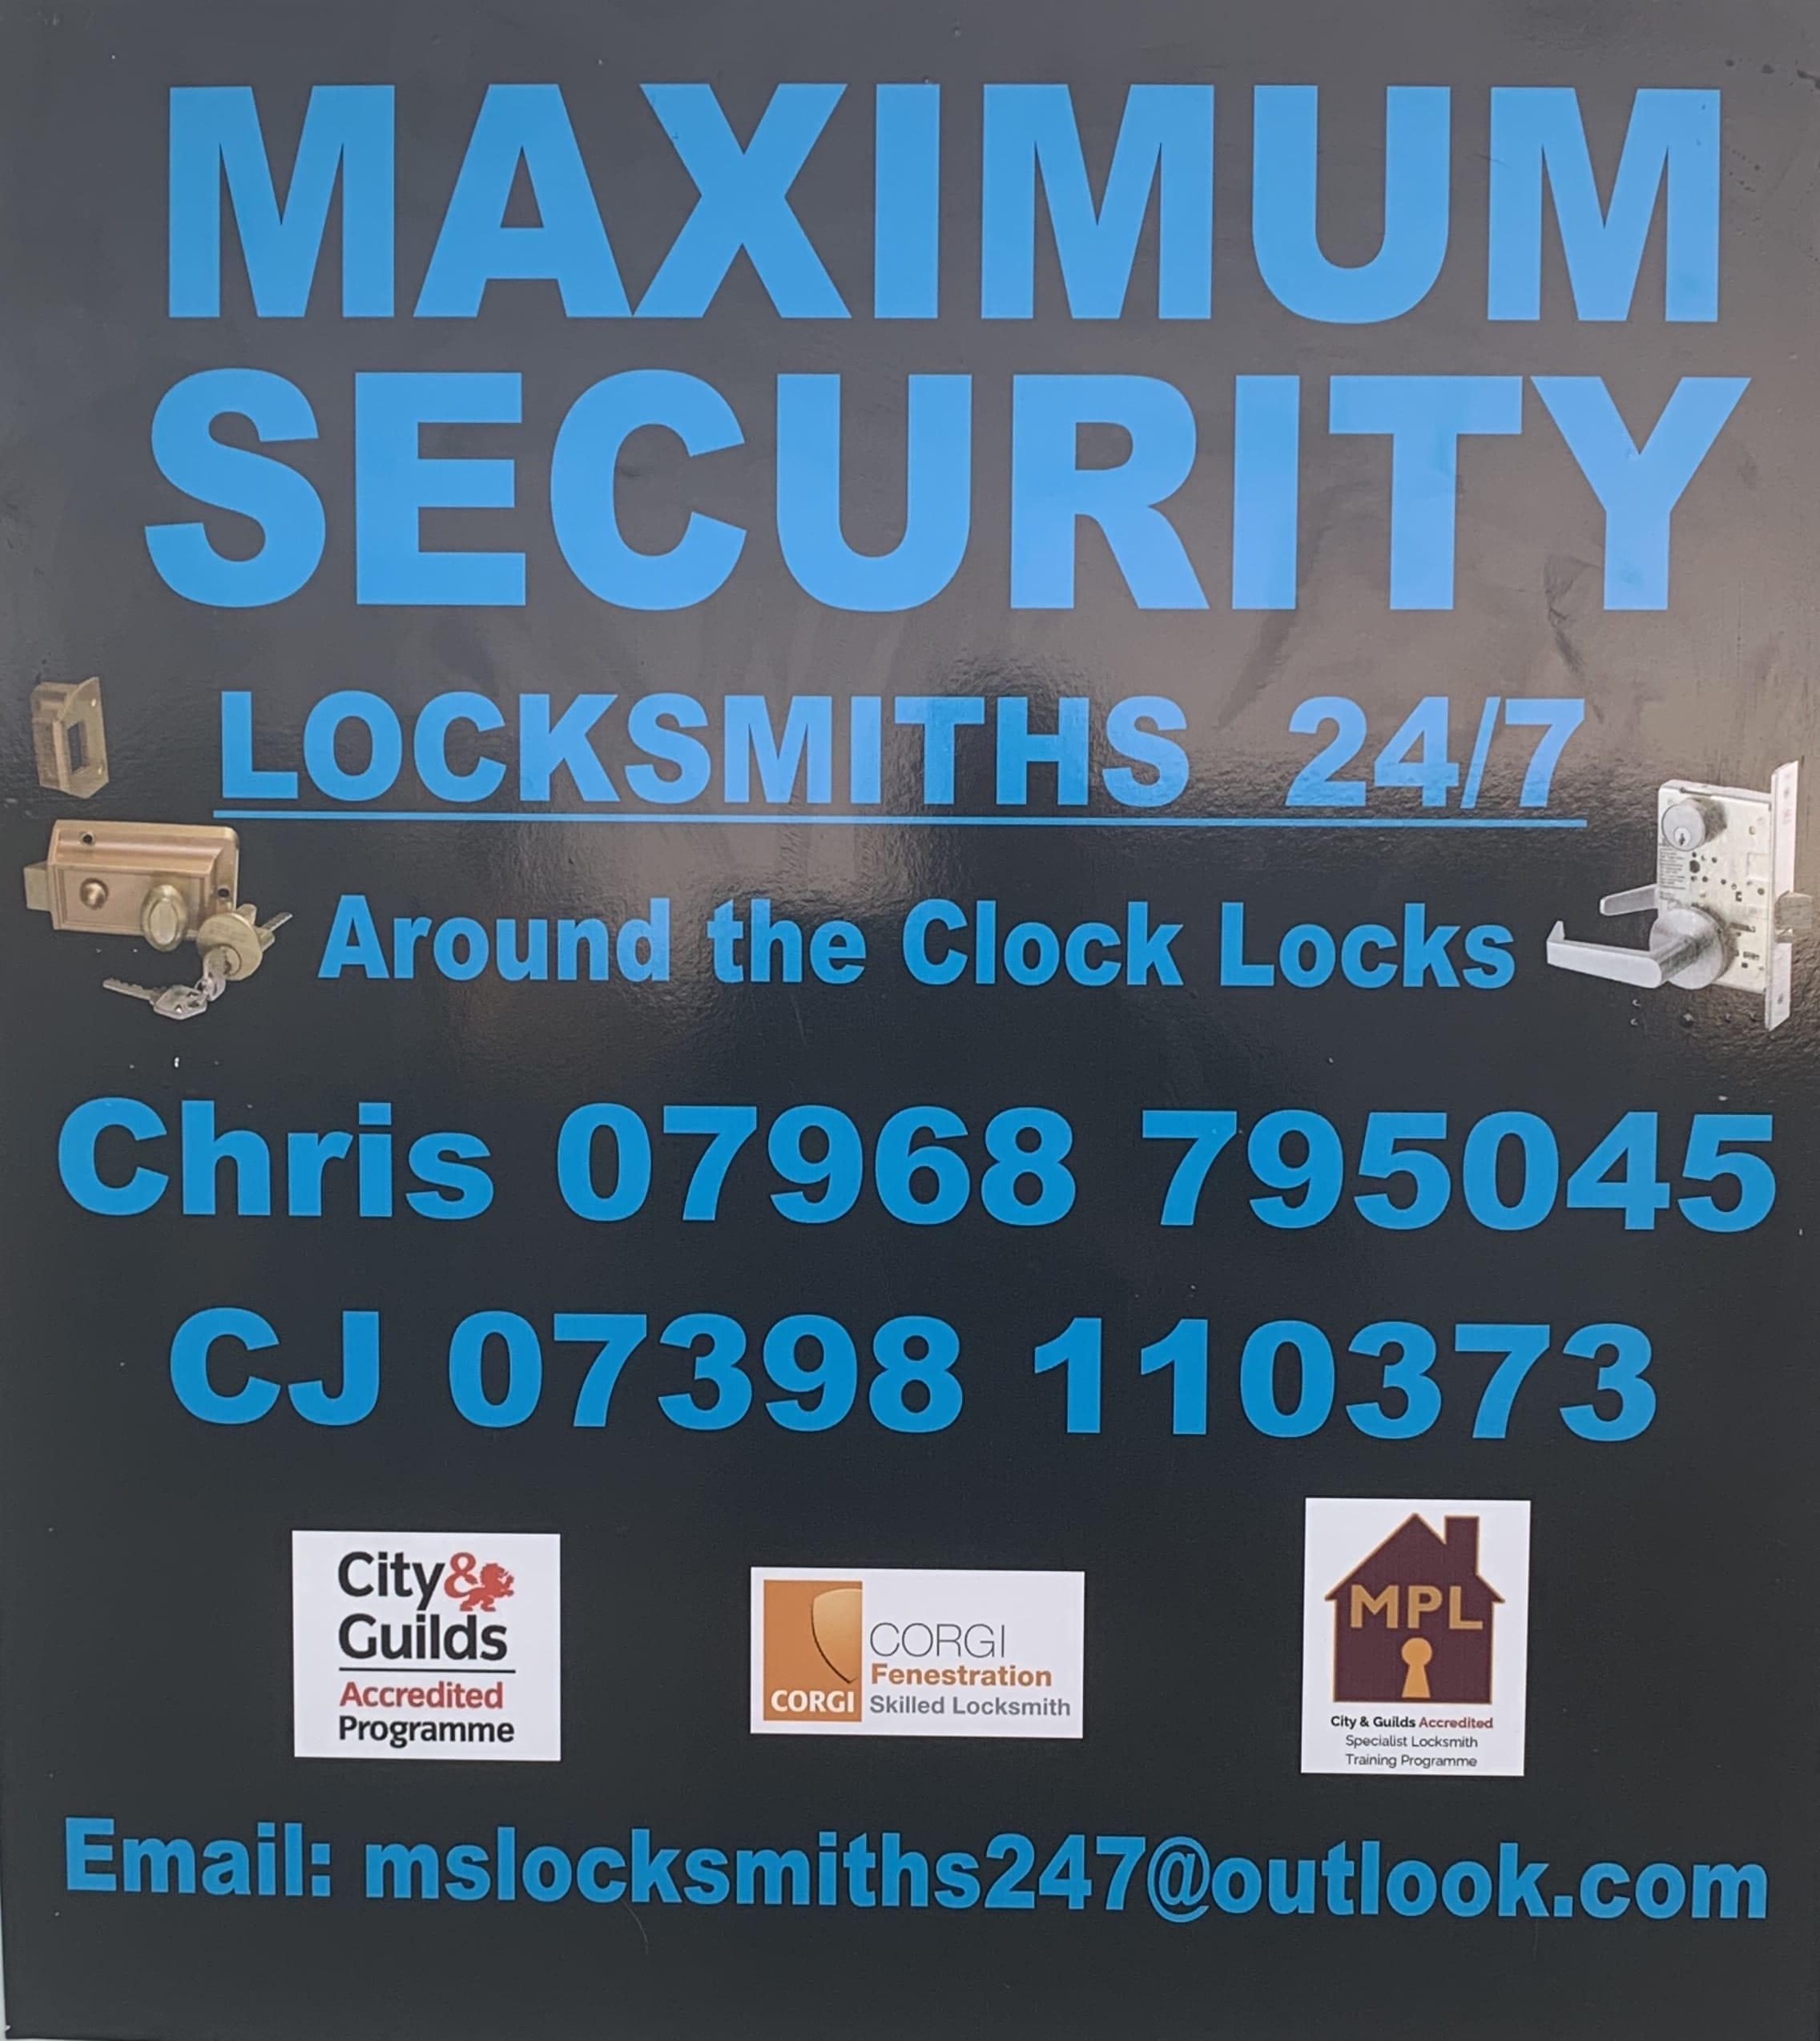 Maximum Security Locksmiths 24/7